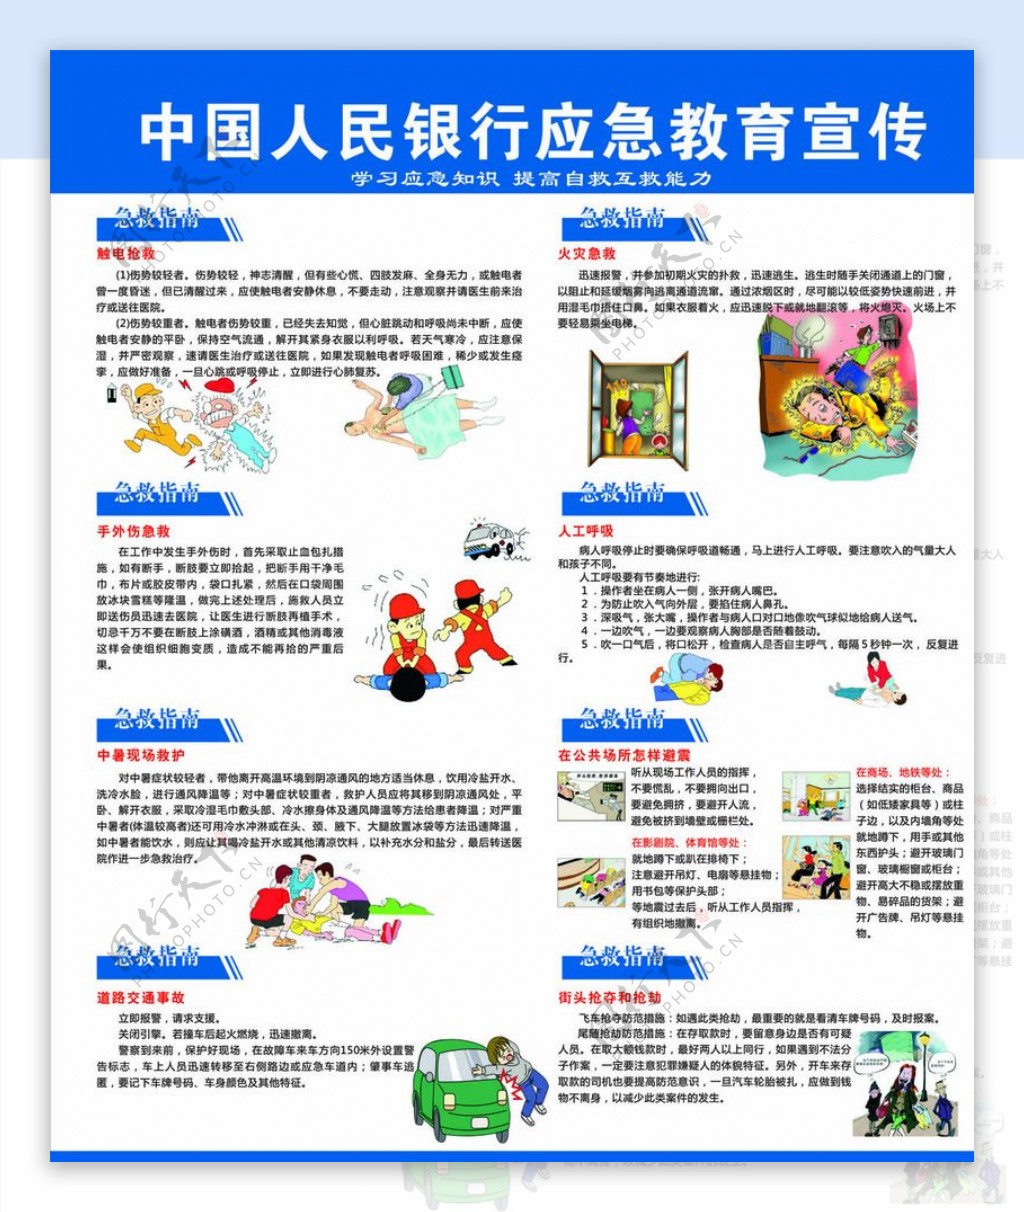 中国人民银行应急宣传栏图片